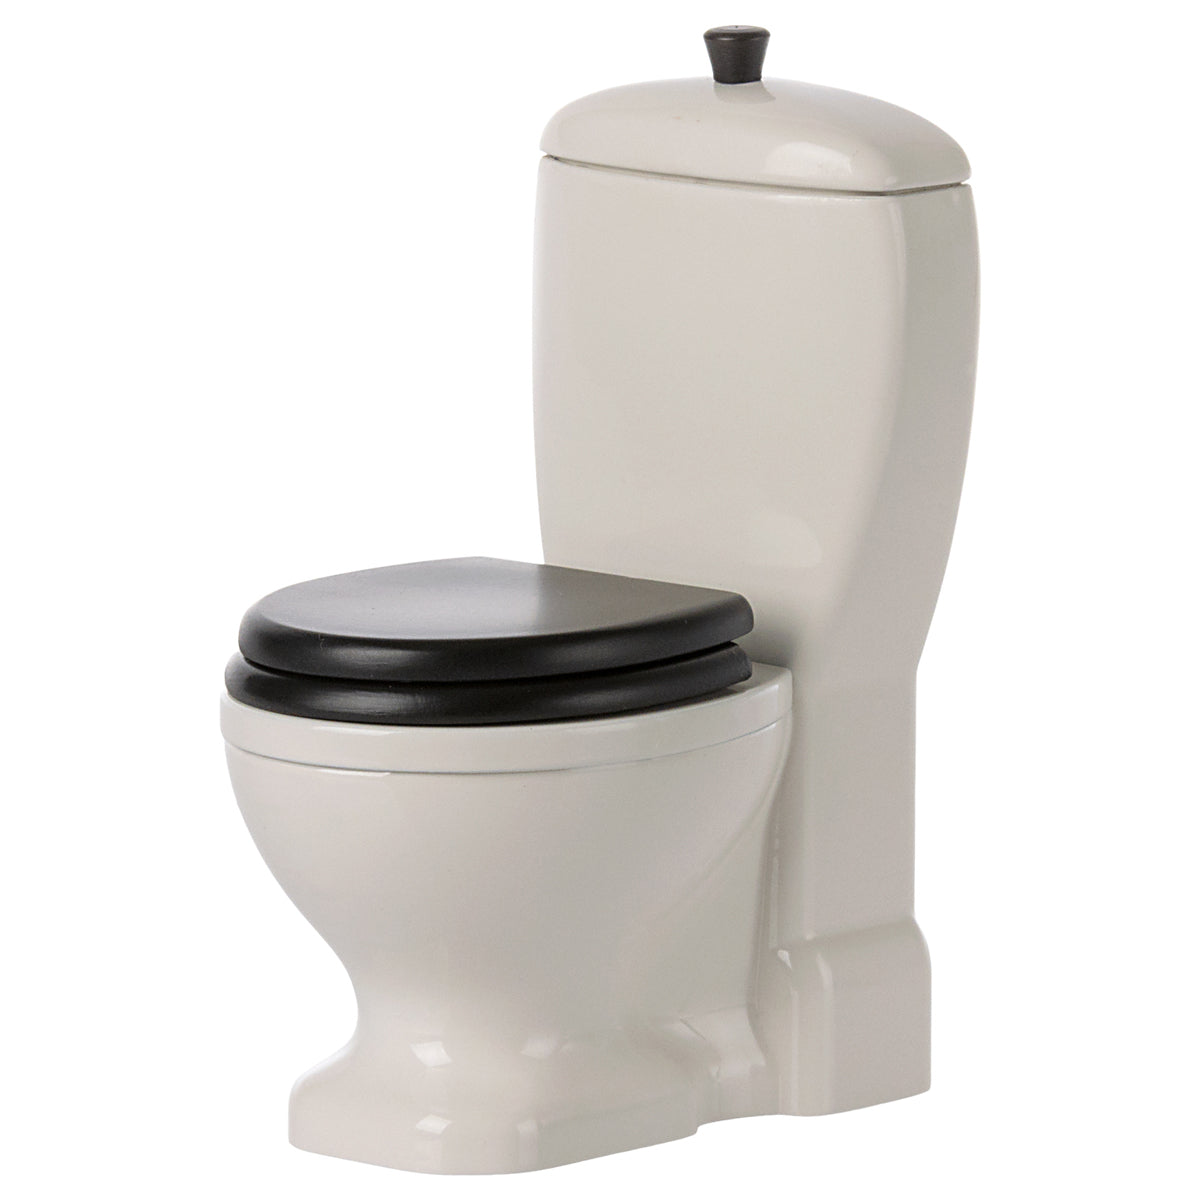 Maileg Miniature Toilet 11-3113-00